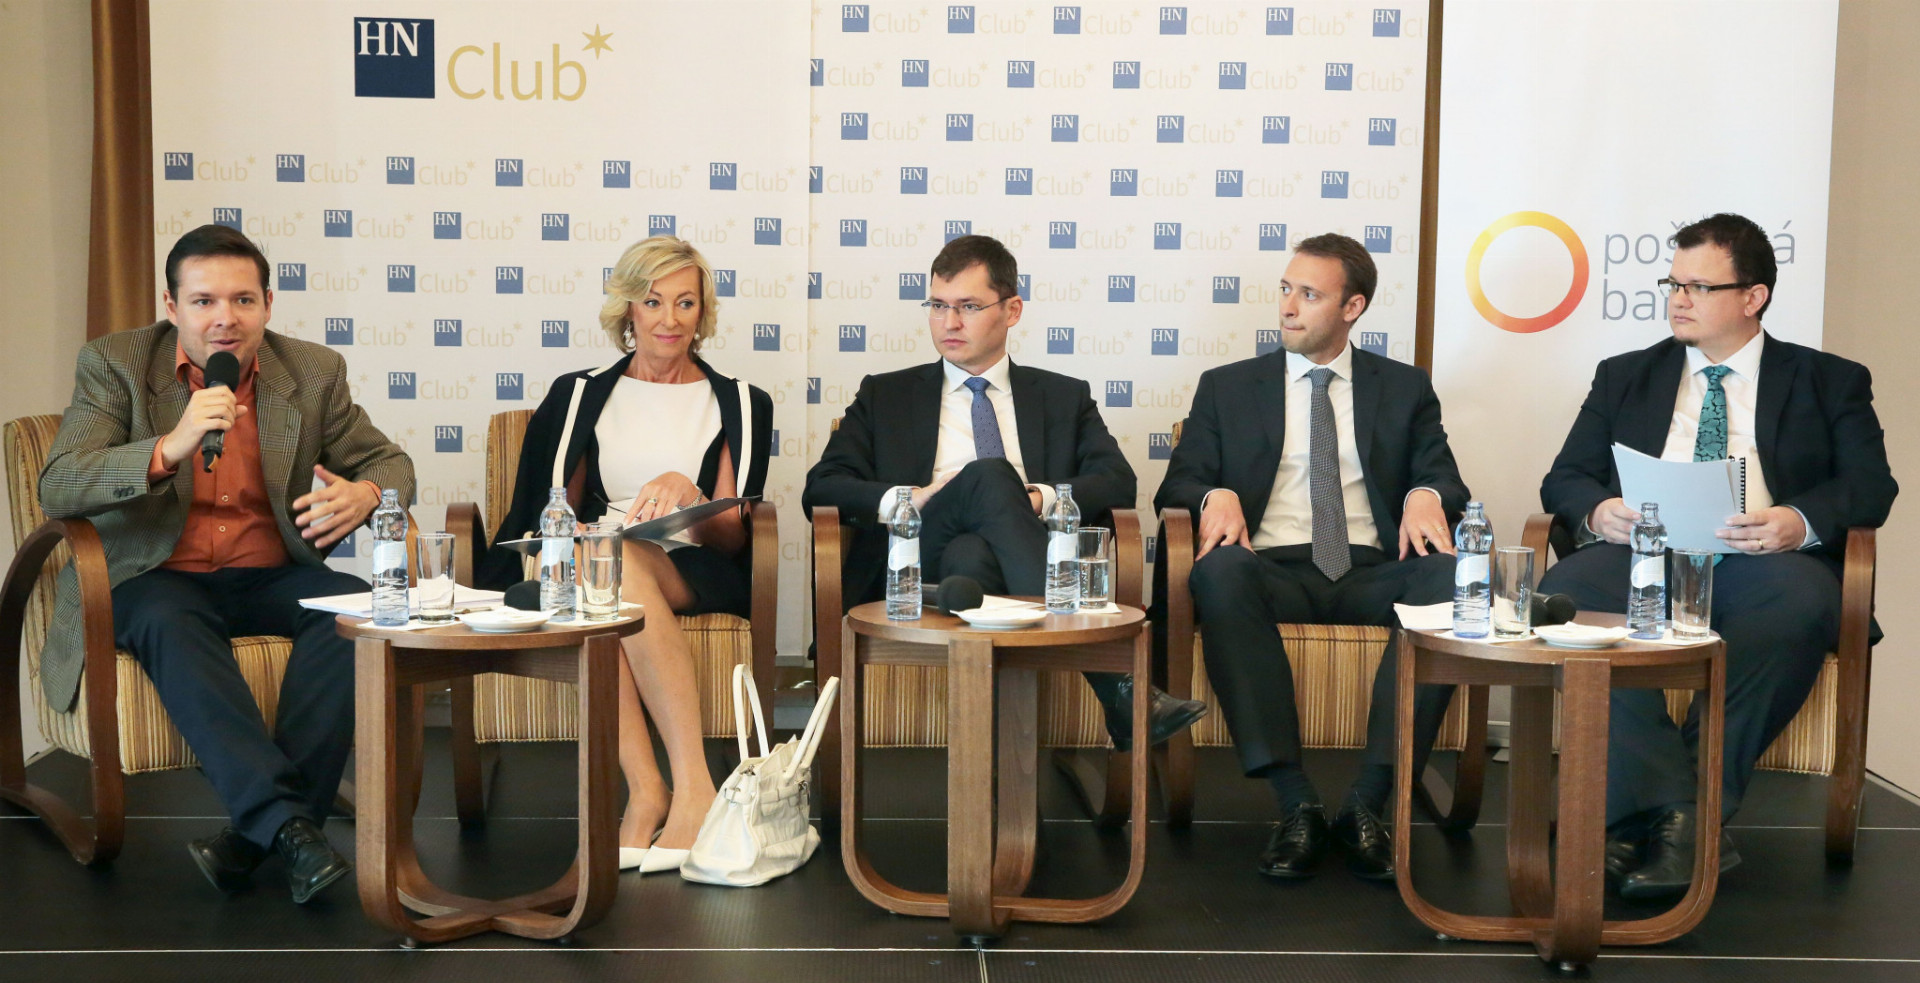 Na konferencii o novej smernici PSD2 debatovali predstavitelia bánk, asociácií i fintechov.